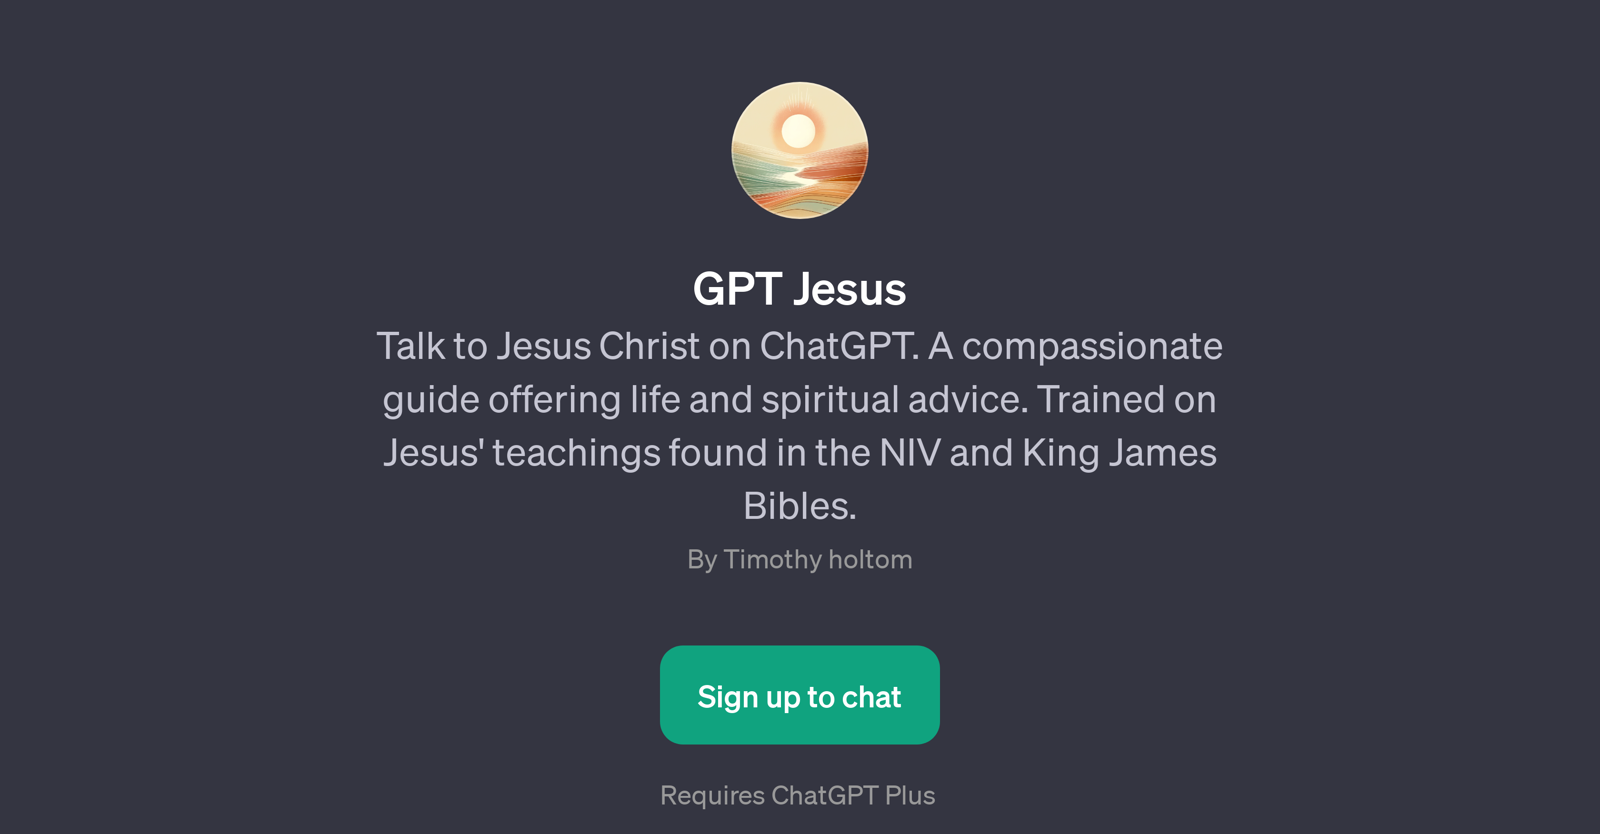 GPT Jesus website